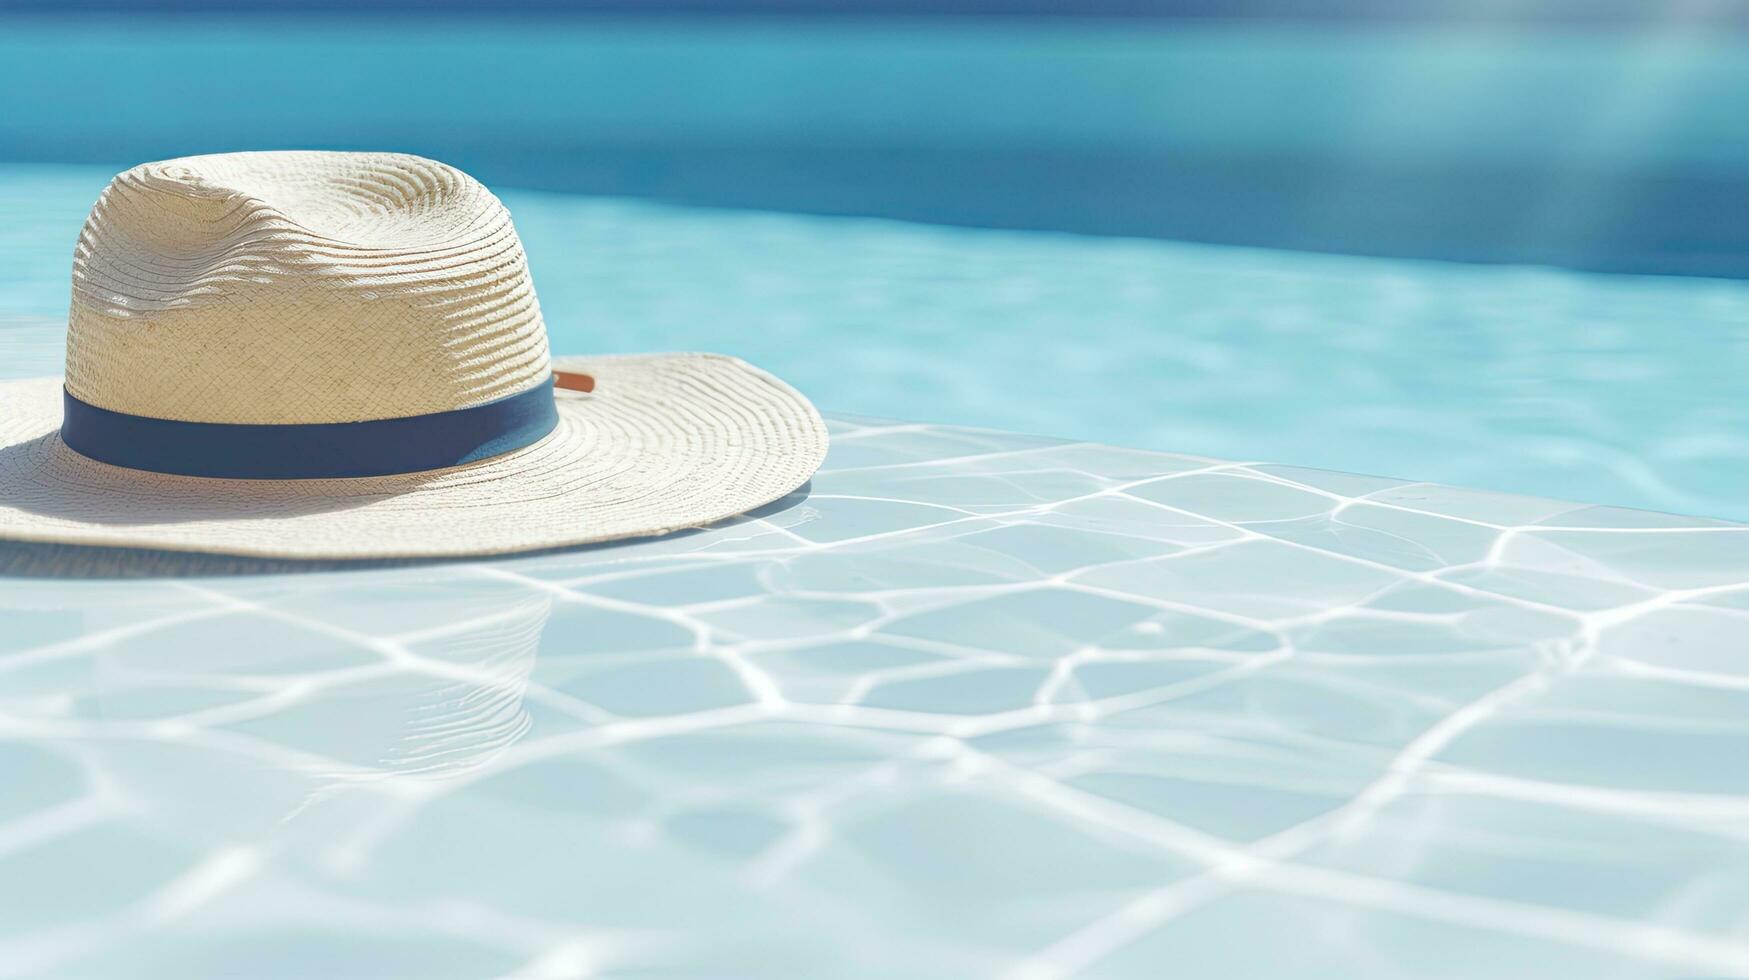 minimal ästhetisch Sommer- Ferien Konzept Hintergrund Sonnenbrille und ein Stroh Hut durch ein Marmor Schwimmen Schwimmbad mit klar Blau Wasser Wellen Sonnenlicht und Schatten Reflexionen foto